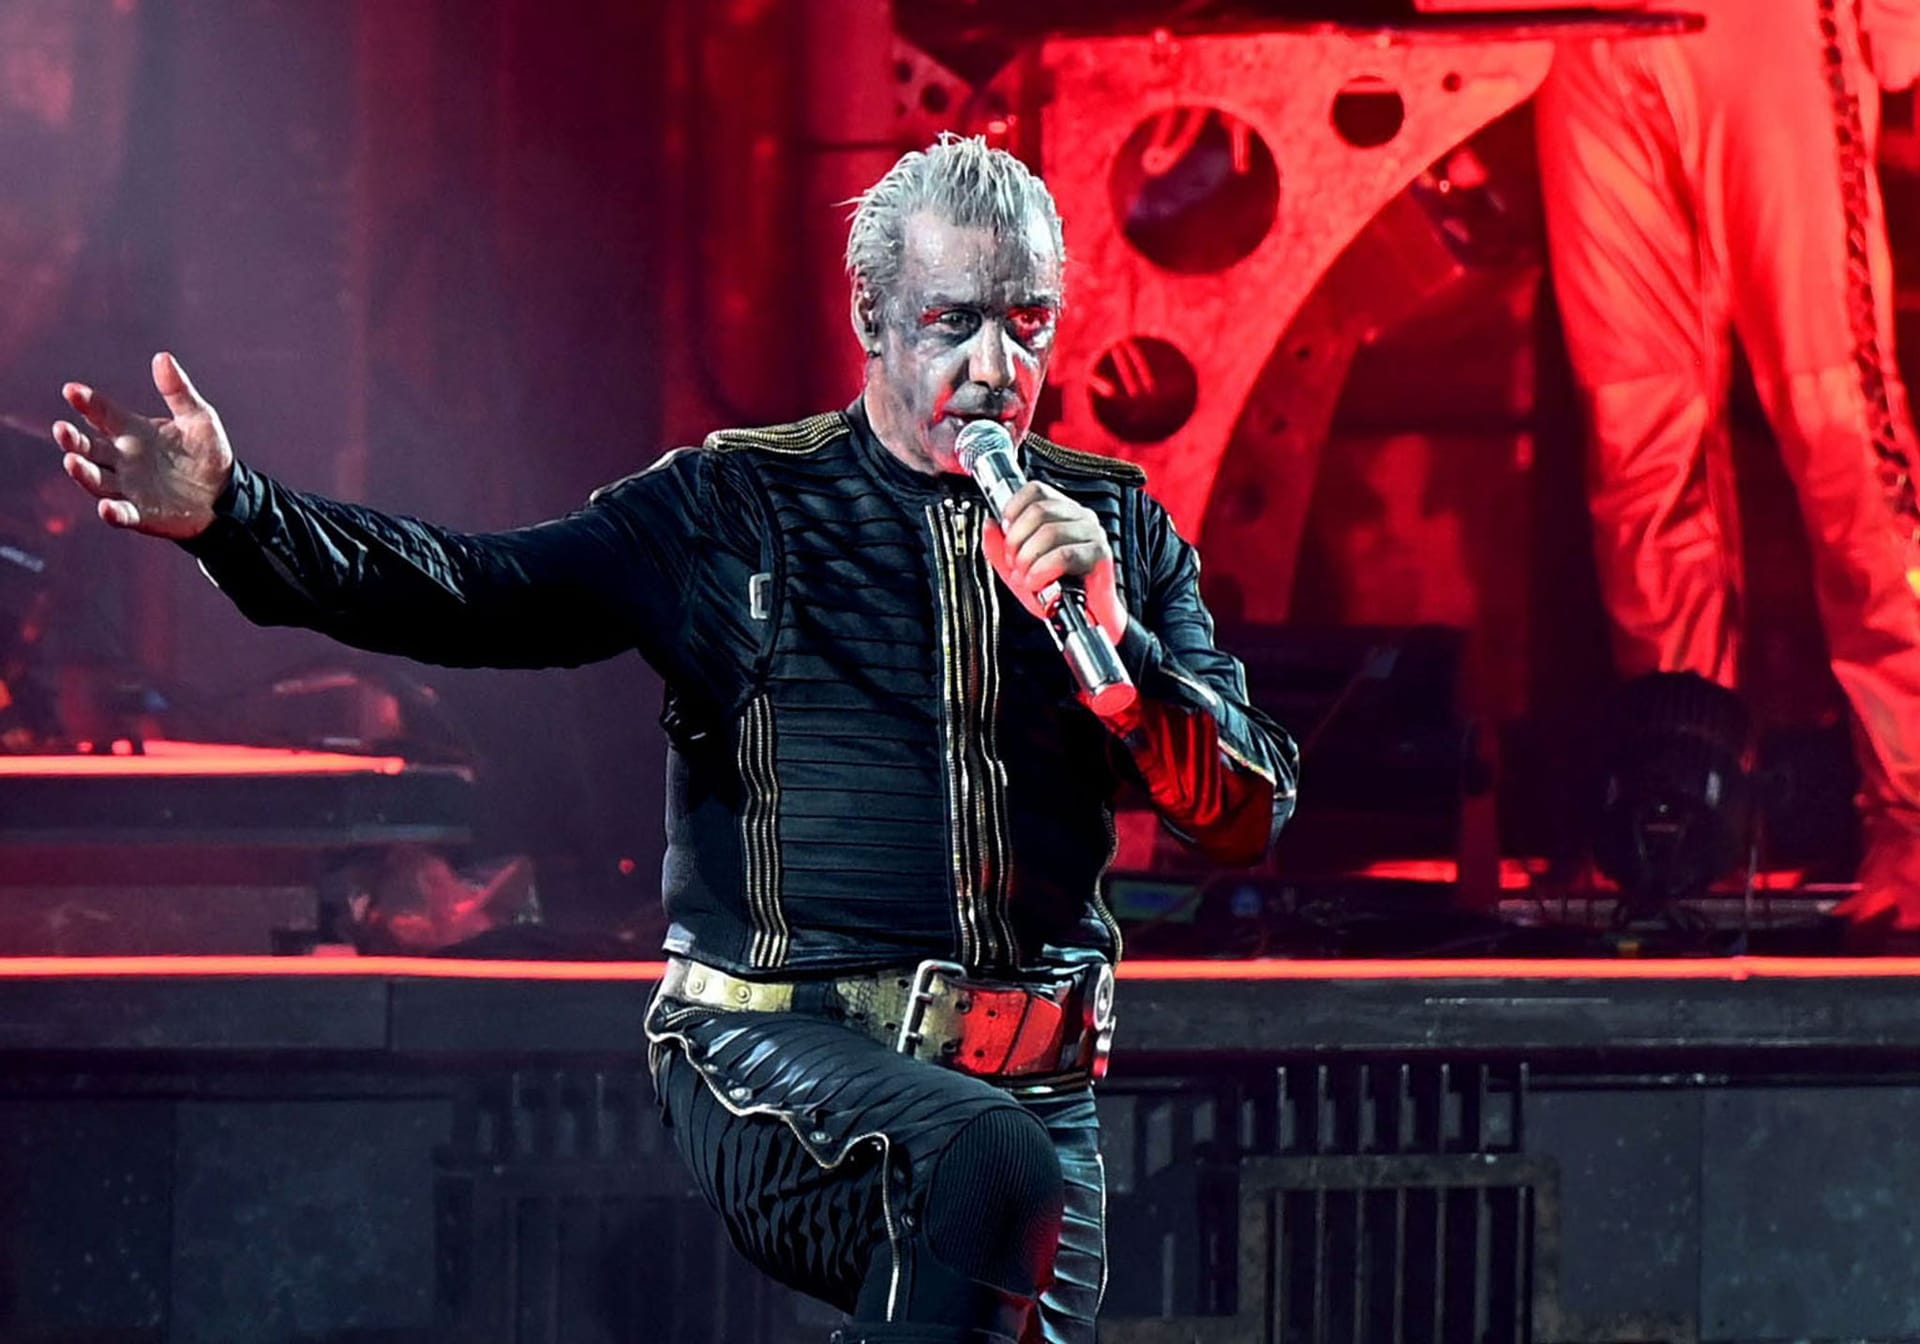 Sänger Lindemann: Er hat bislang auf die Vorwürfe nicht reagiert.